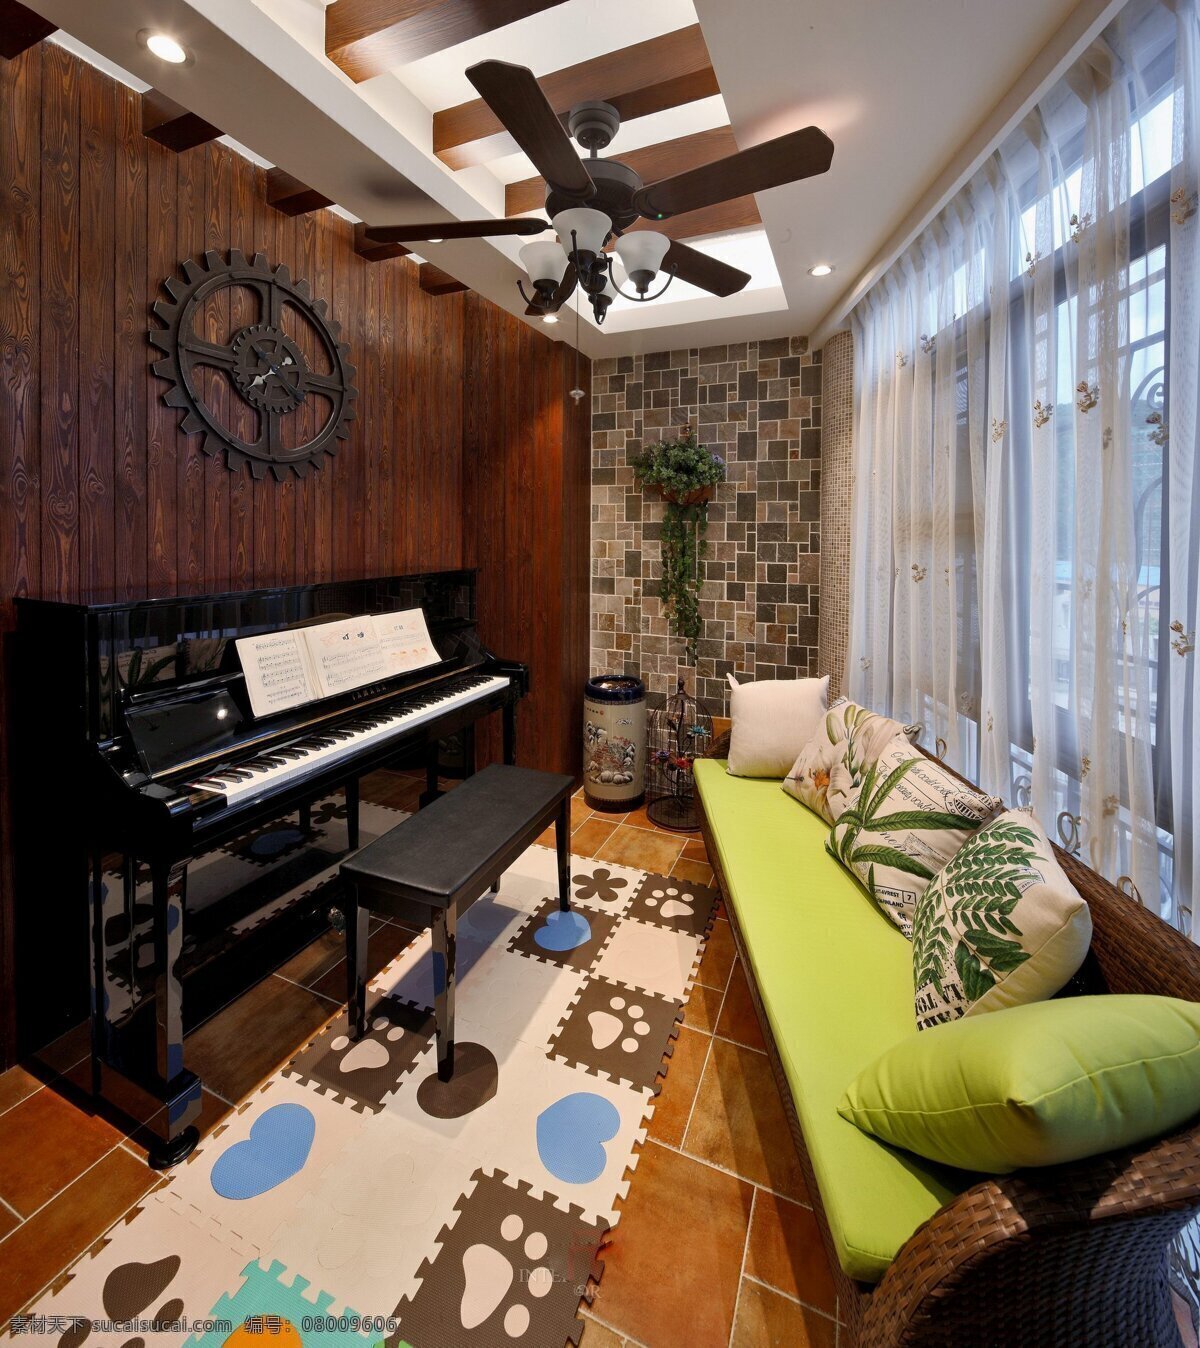 美式 钢琴 室 沙发 设计图 家居 家居生活 室内设计 装修 室内 家具 装修设计 环境设计 效果图